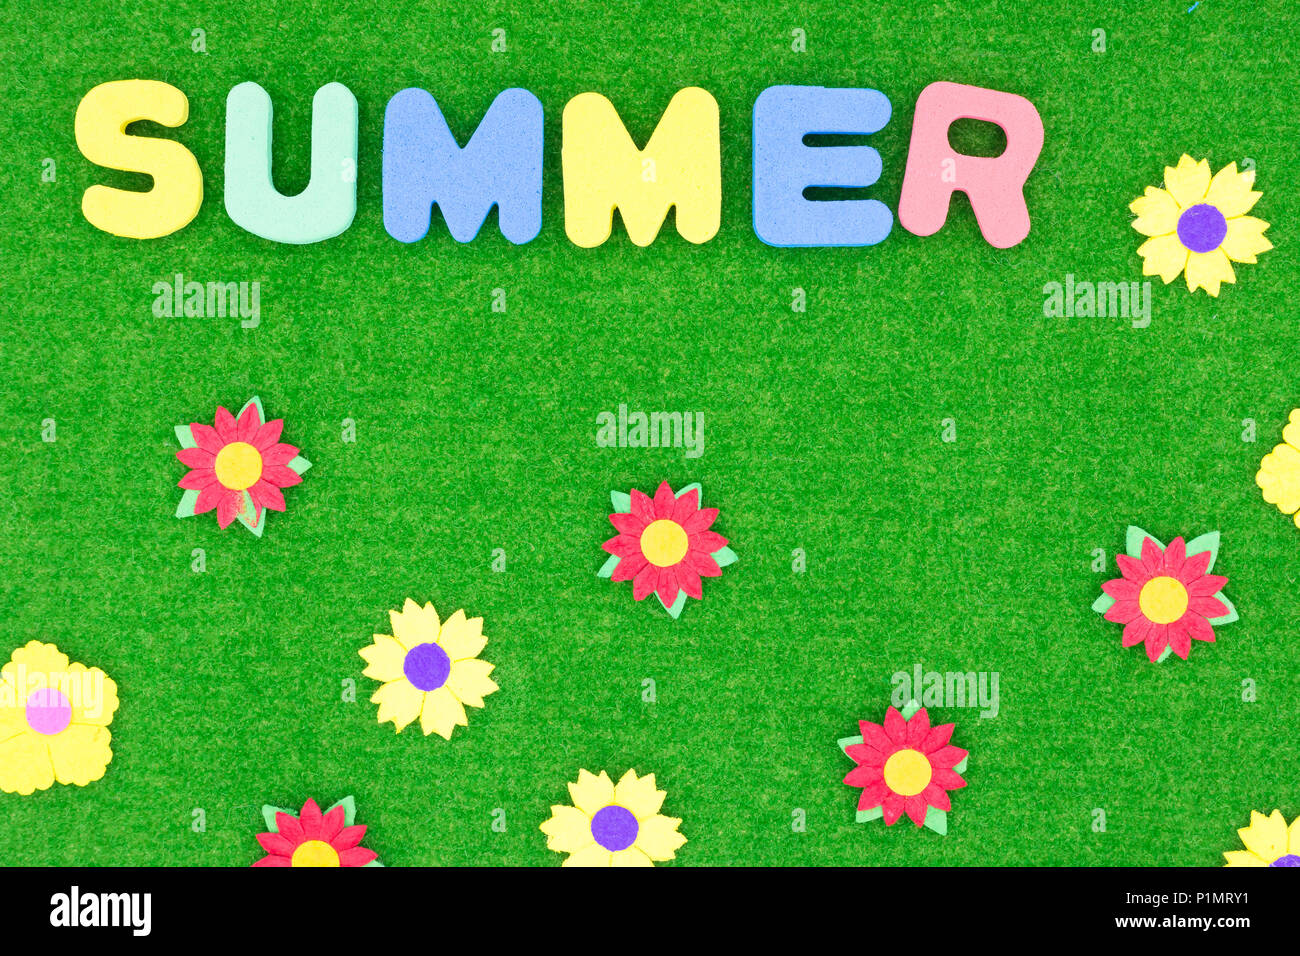 Sommer Schrift auf grünem Gras Hintergrund mit Blumen Stockfoto